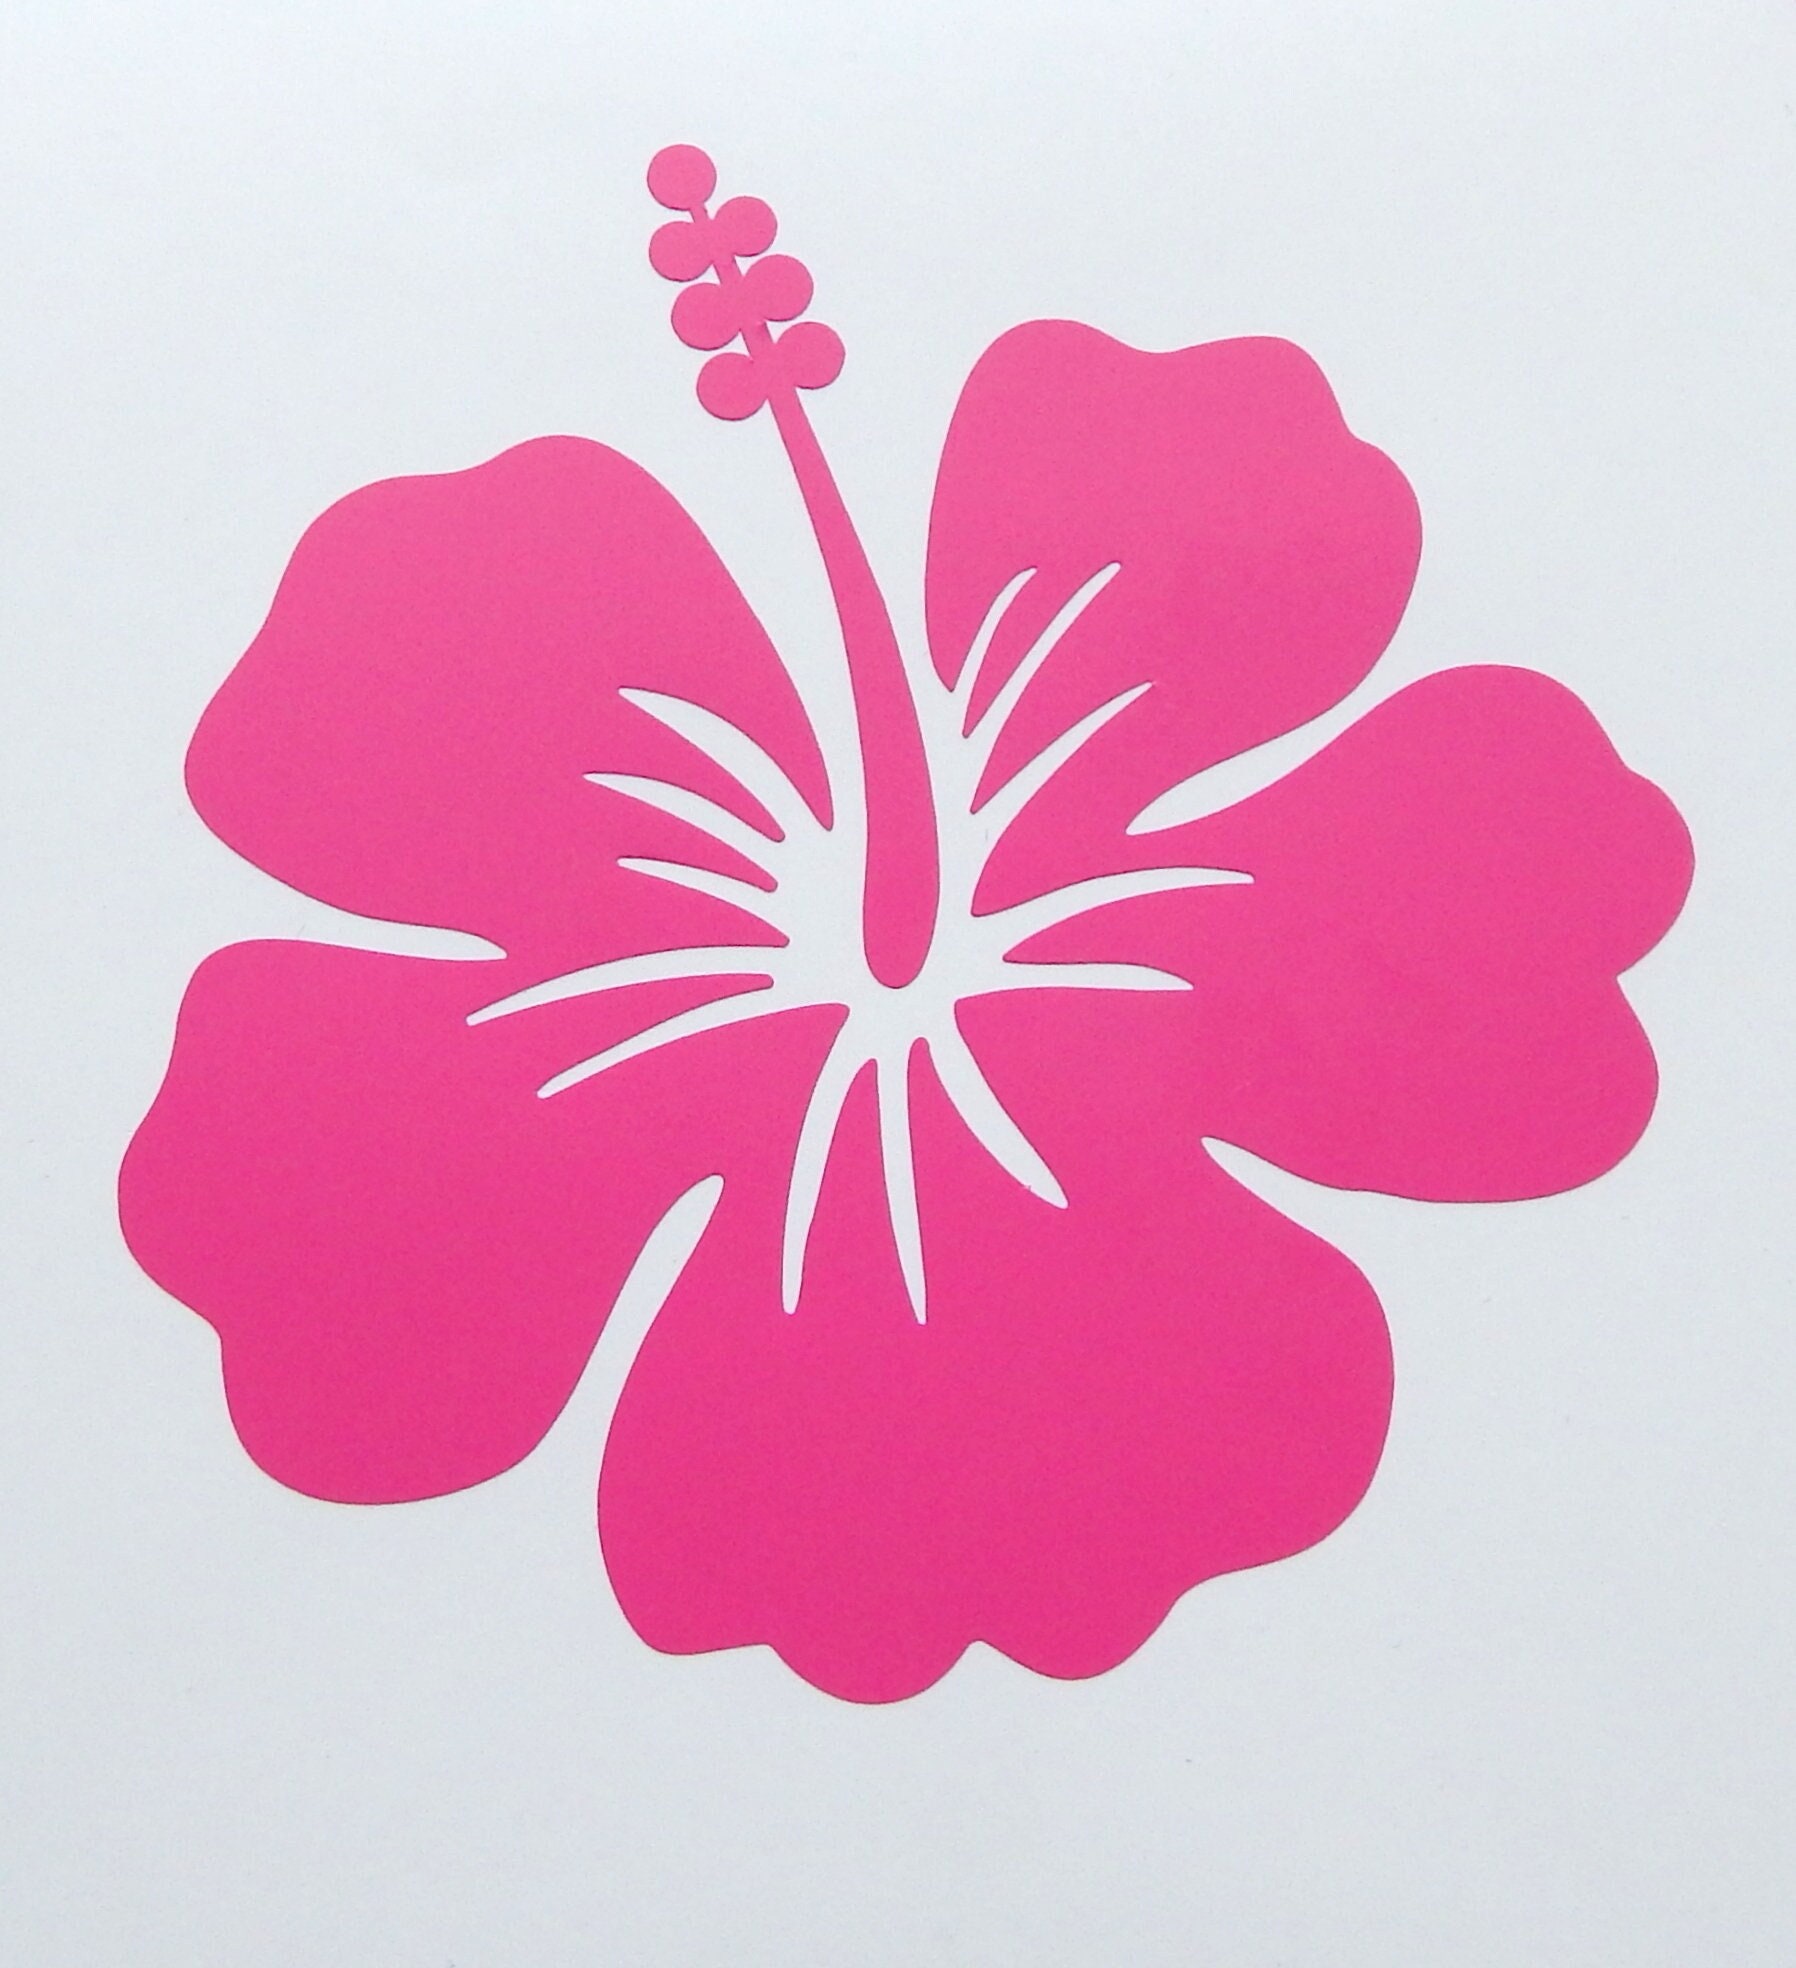 JINTORA Sticker - Autocollant - Lot de 2 Stickers Fleurs d'hibiscus chacun  30cm x 36cm Blanc - réglage Lunette arrière Voiture - Style de Voiture